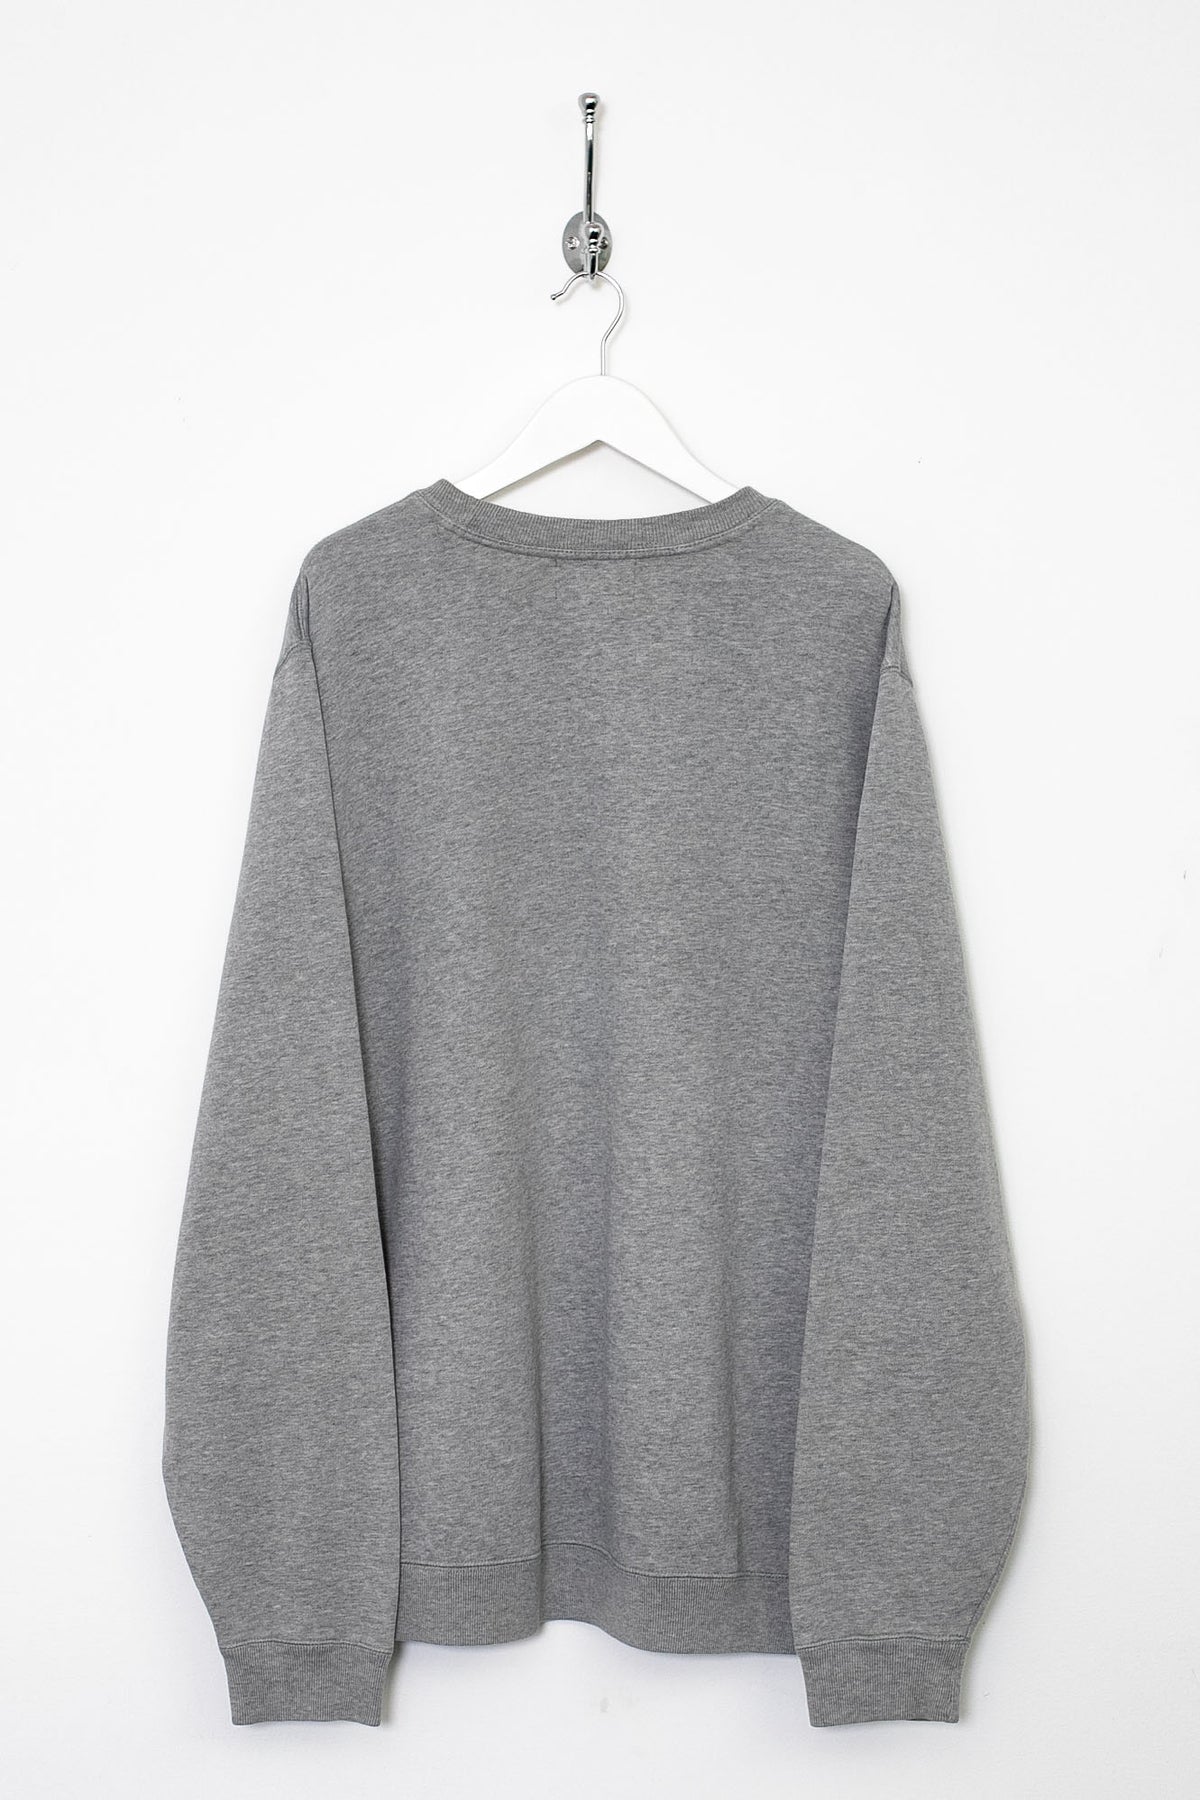 00s Ralph Lauren Sweatshirt (XL)